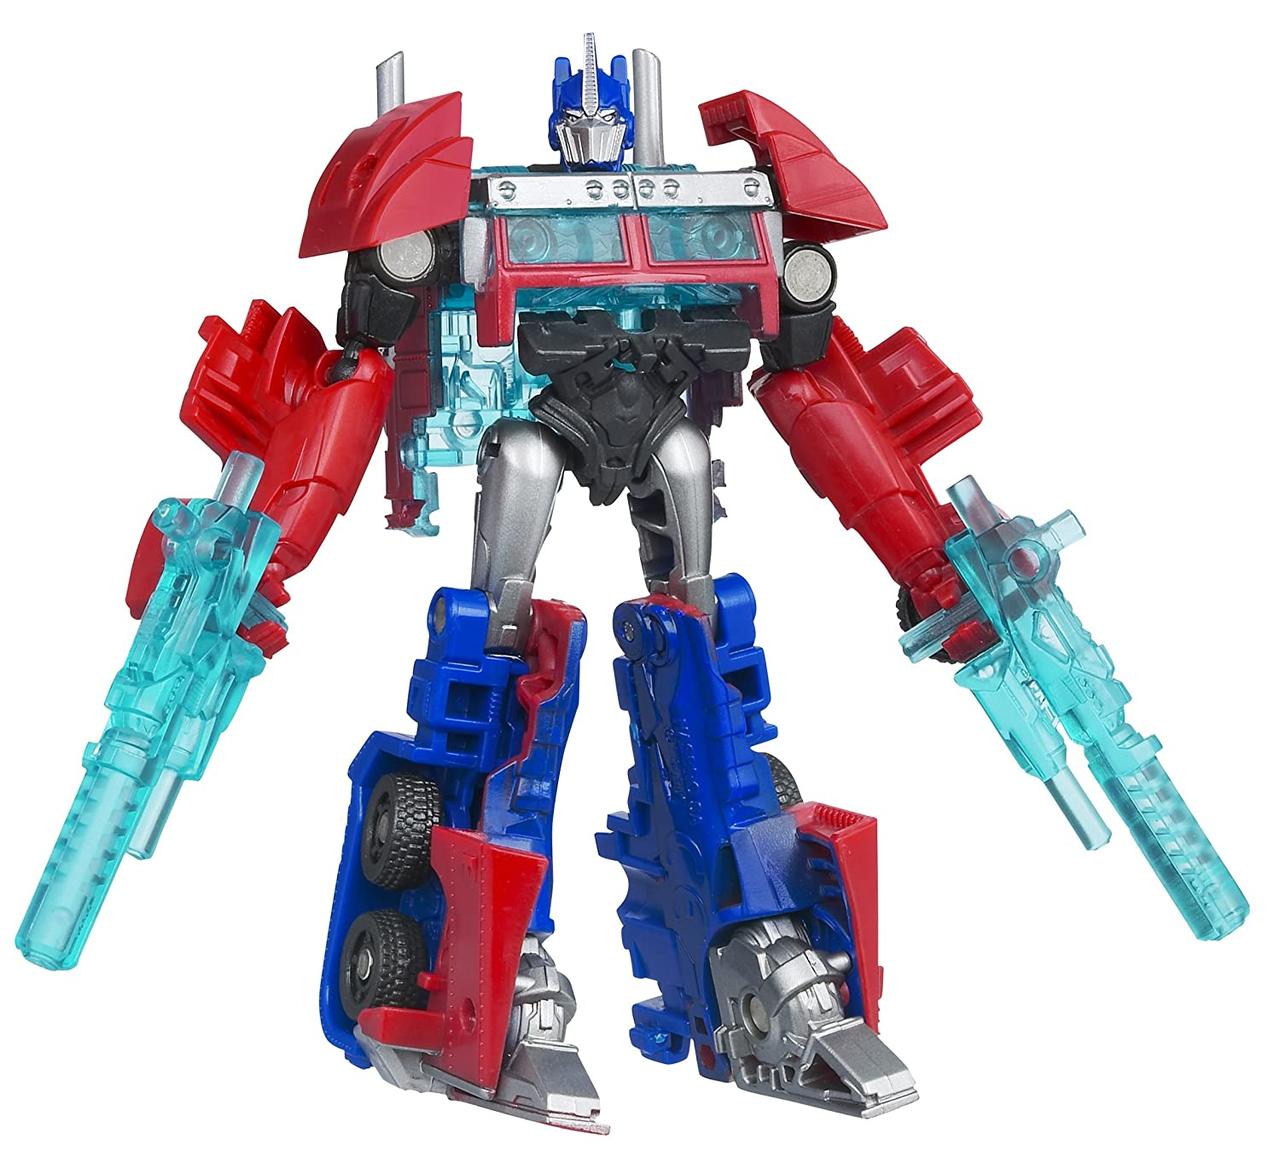 Робот-трансформер, Hasbro, Оптимус Прайм "Трансформеры Прайм" - Optimus  Prime, "Transformers Prime" Cyberverse — Купить Недорого на Bigl.ua  (1149187774)